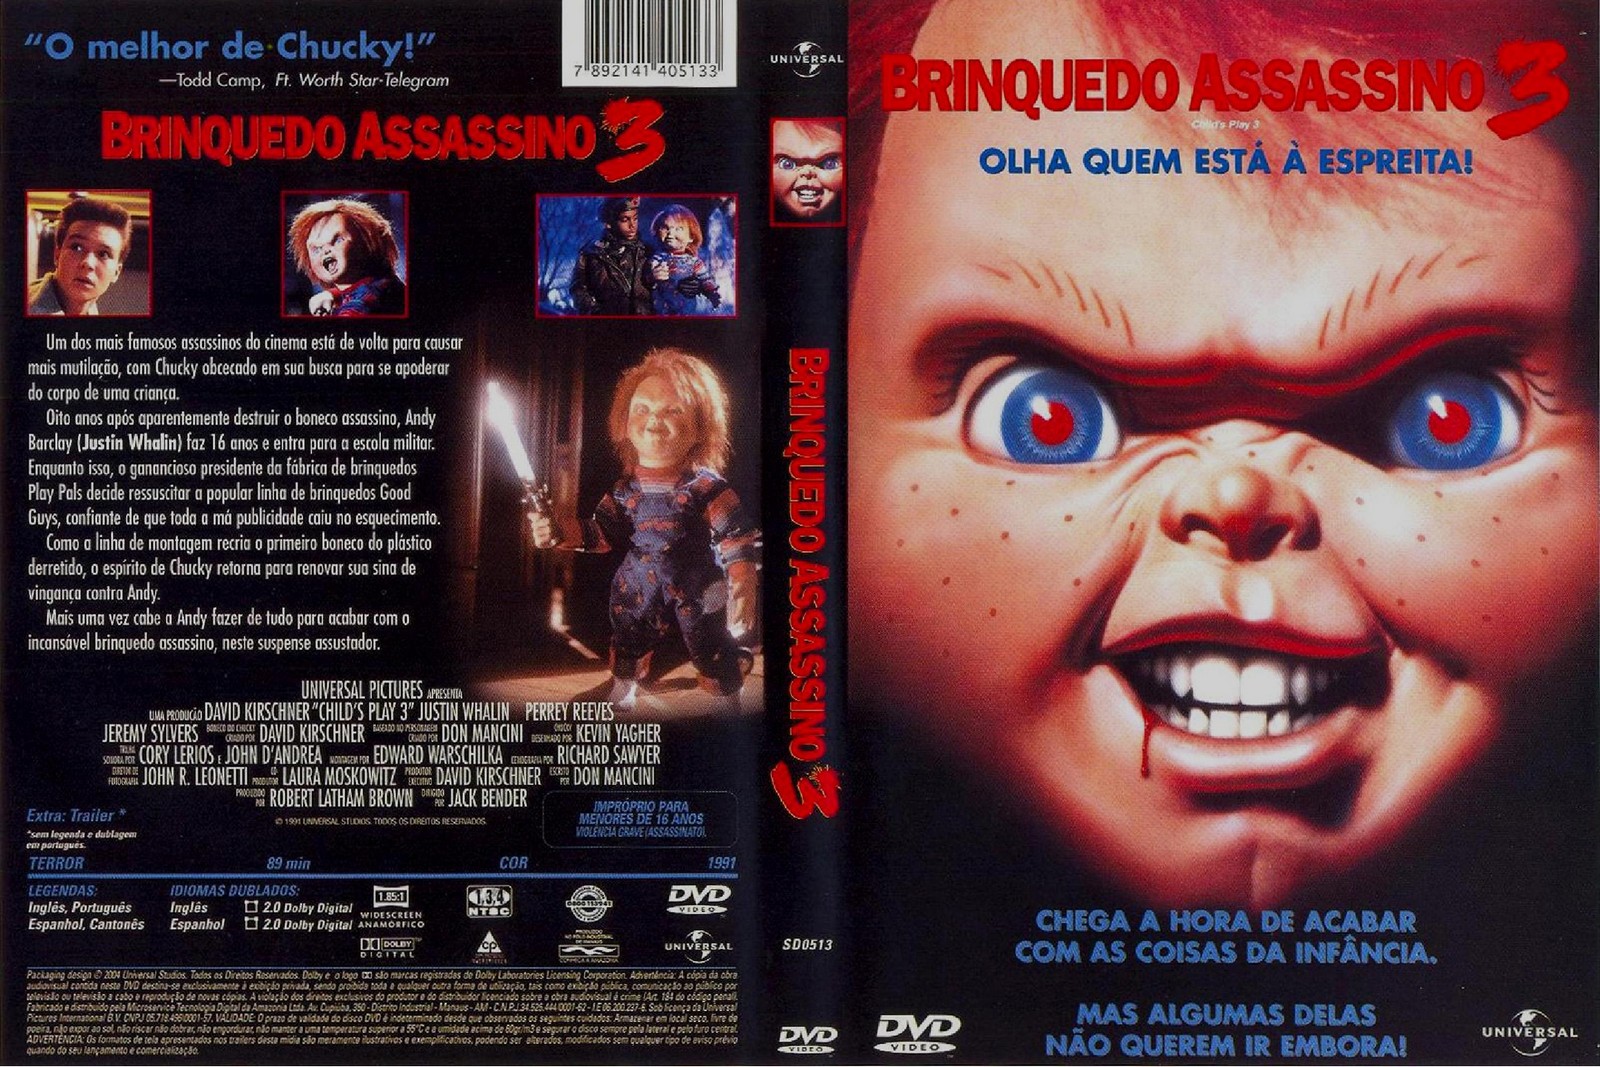 A Noiva De Chucky - Capa Filme DVD  A noiva de chucky, Chucky, Filme dvd